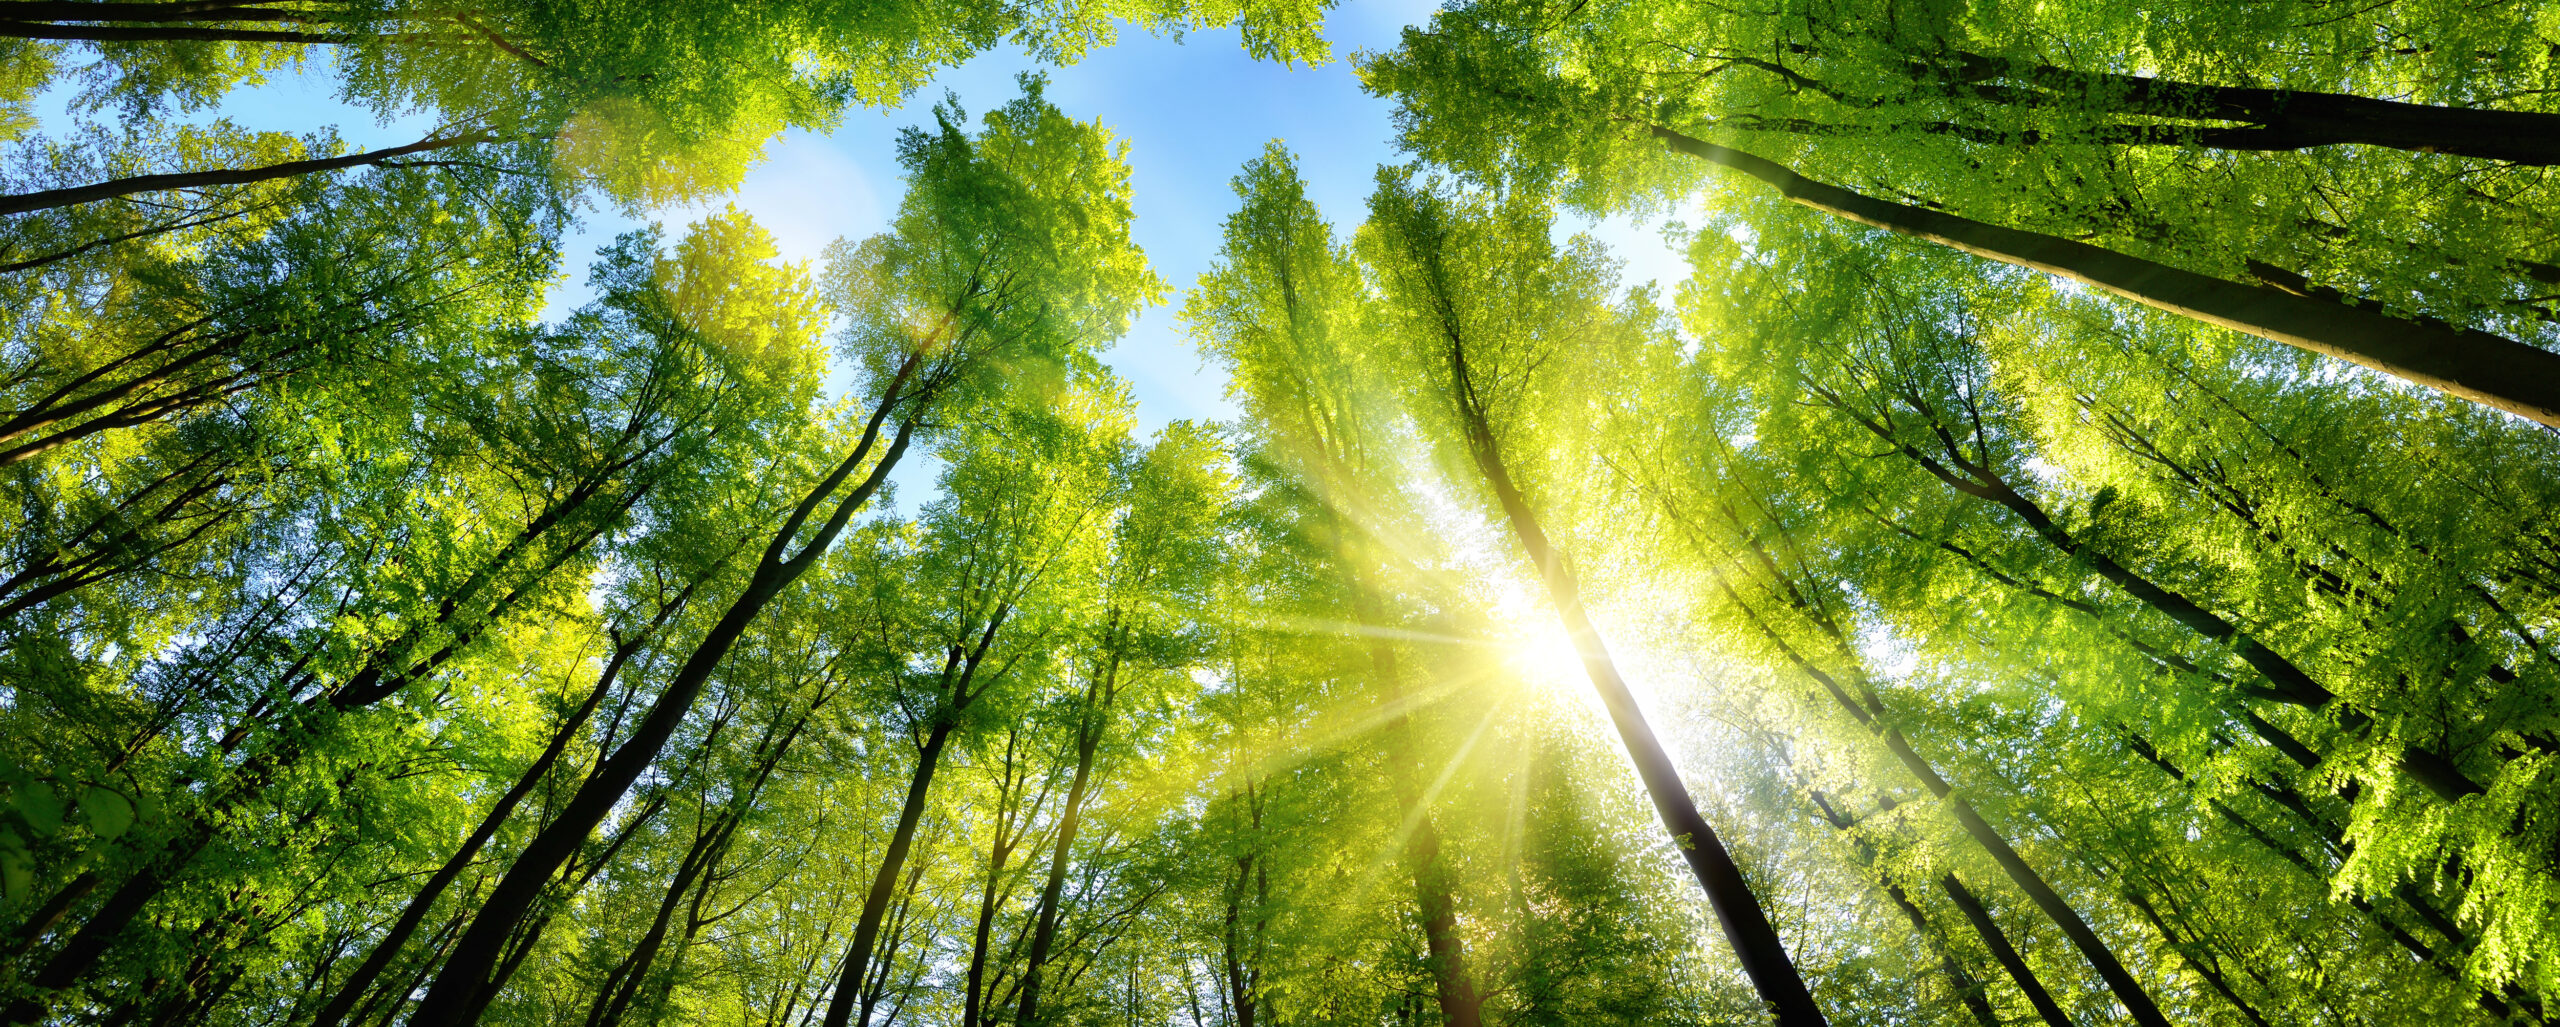 Az év fája a bükk, erdeiben feltöltődhetünk energiával